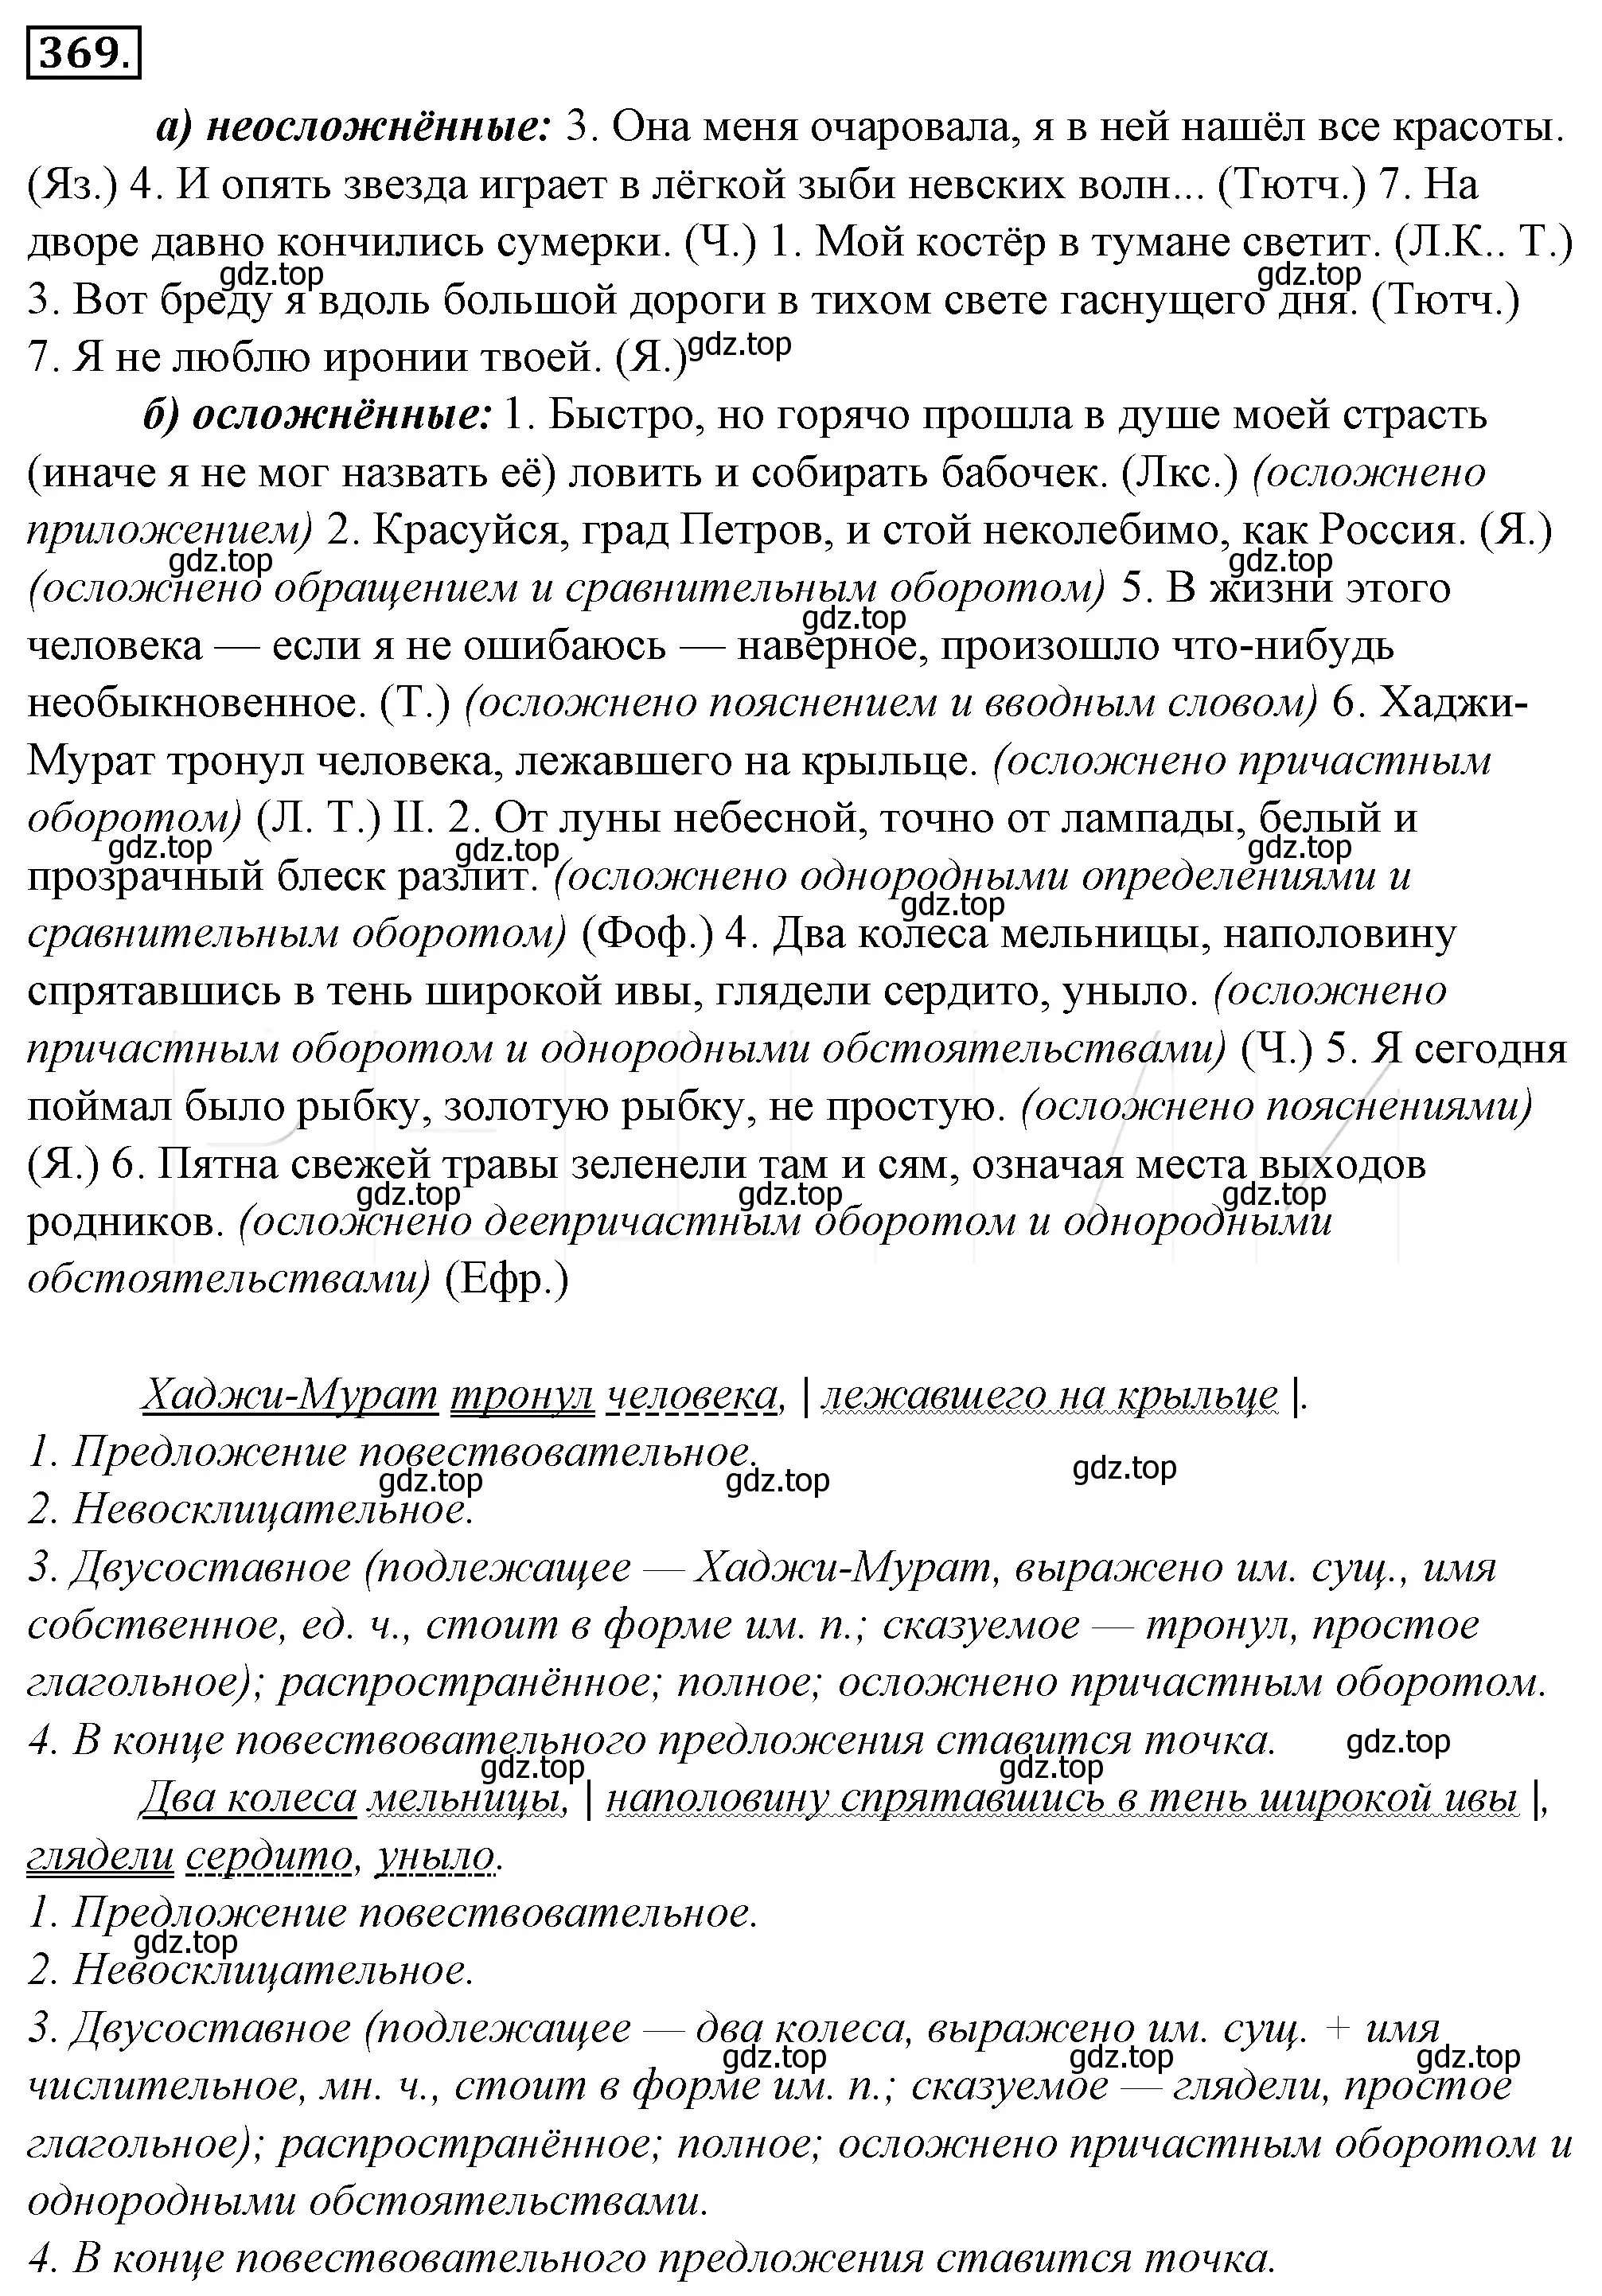 Решение 4. номер 34 (страница 44) гдз по русскому языку 10-11 класс Гольцова, Шамшин, учебник 2 часть